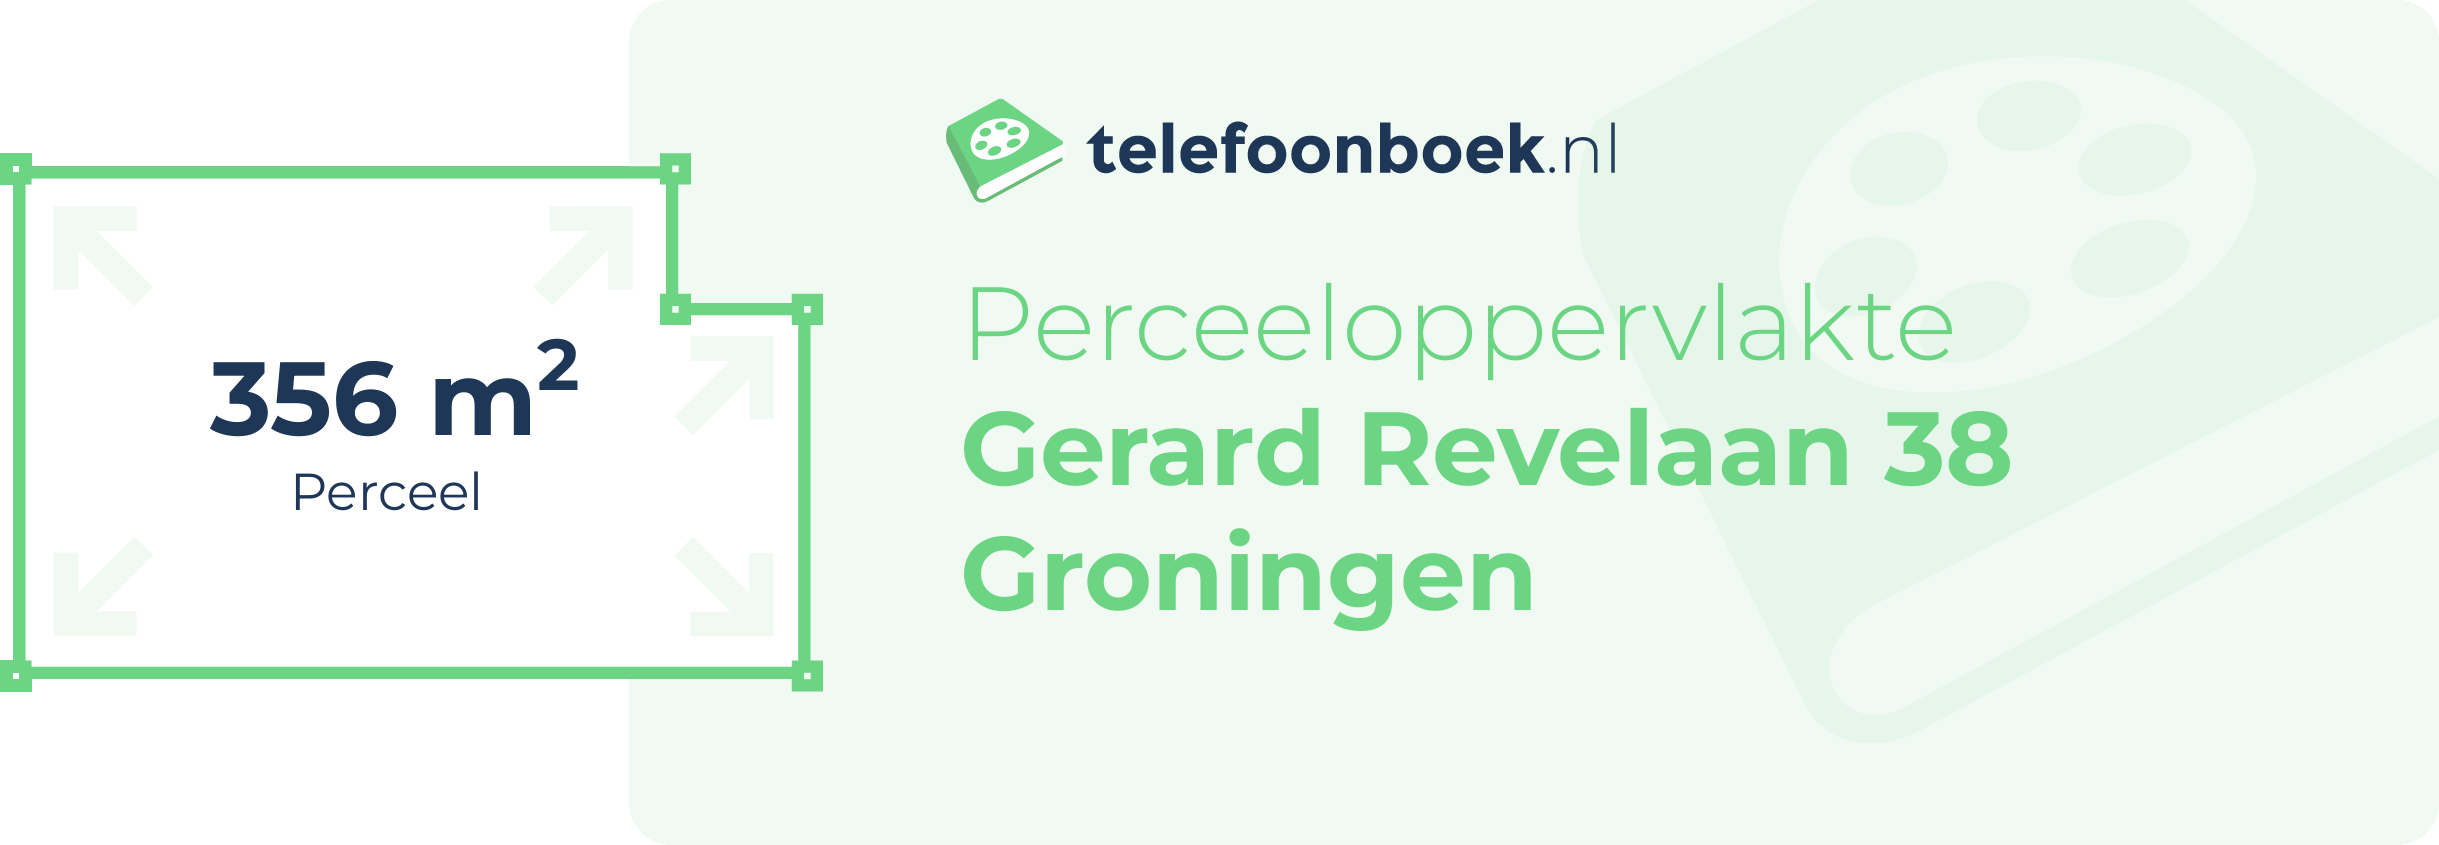 Perceeloppervlakte Gerard Revelaan 38 Groningen